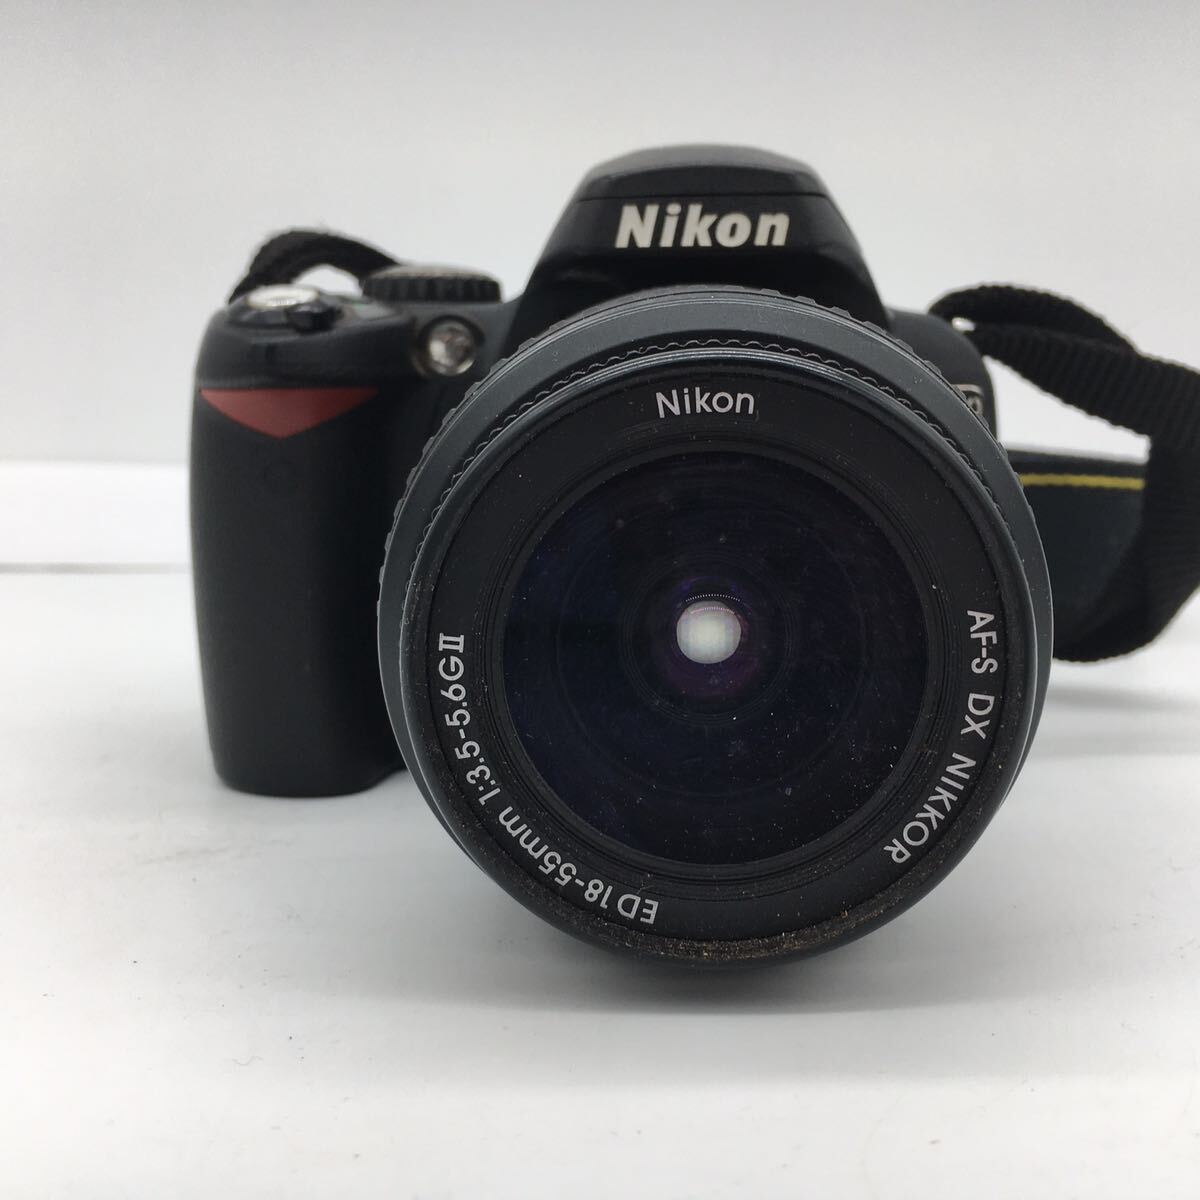 ニコン Nikon D40 デジタル 一眼レフ カメラ AF-S DX NIKKOR ED 18-55mm 3.5-5.6GⅡ レンズセット SDカード16GB付属 動作確認済_画像2